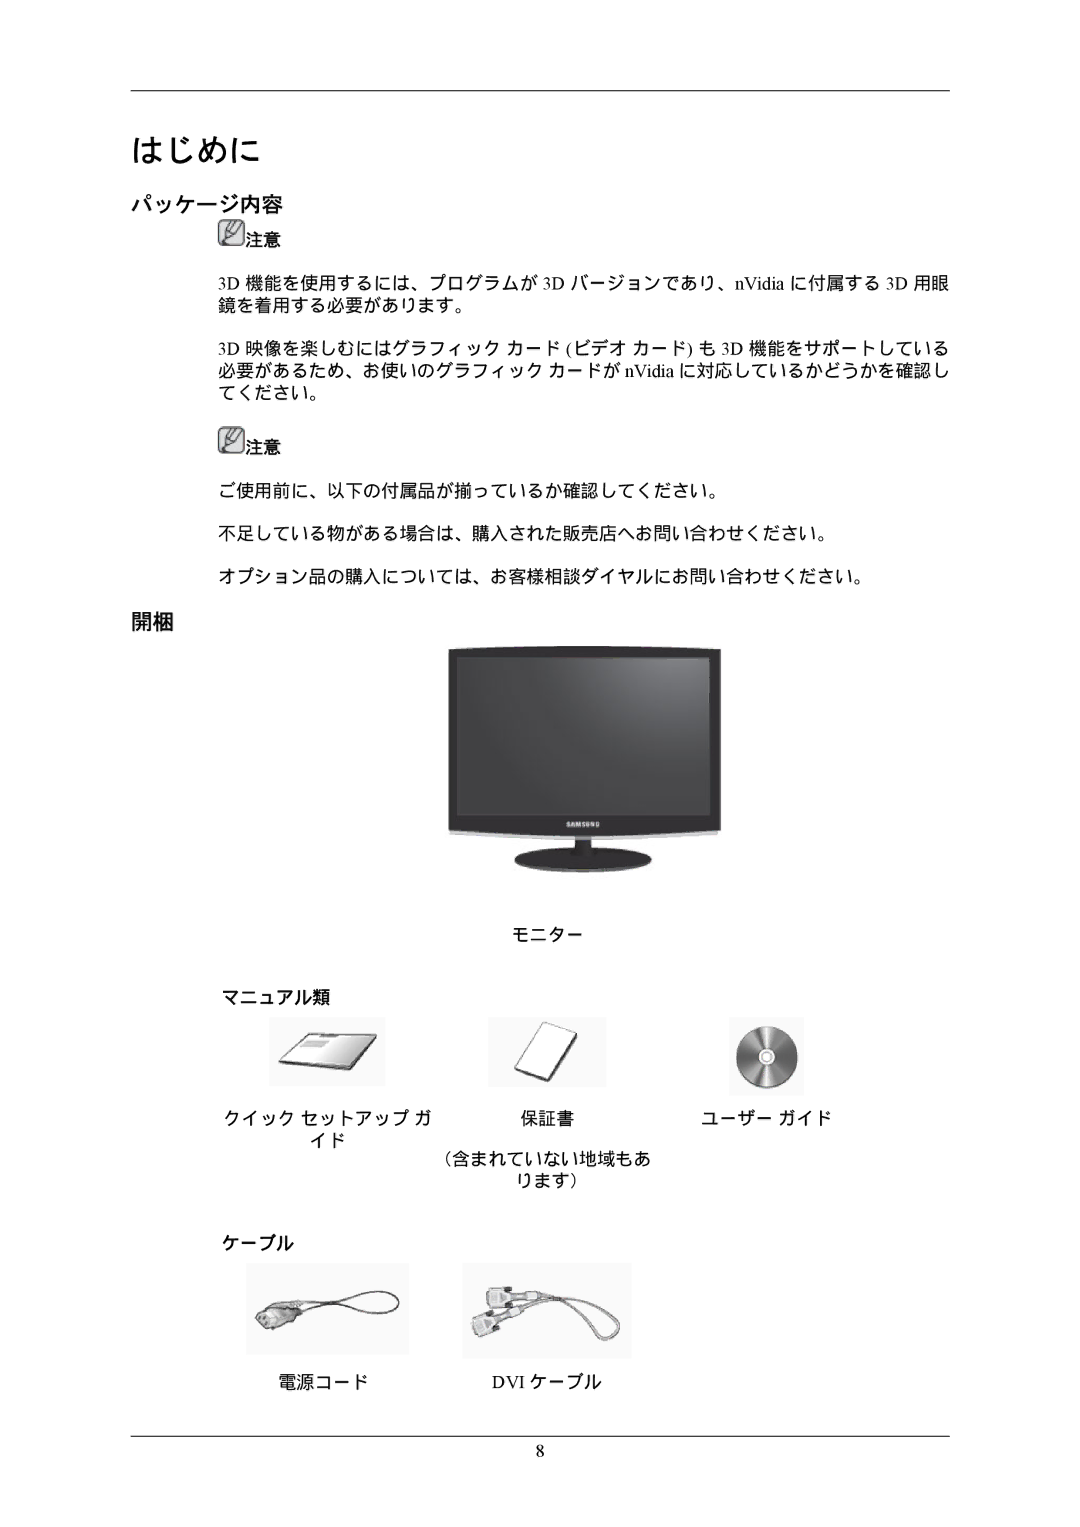 Samsung LS22CMEKFV/XJ, LS22CMFKFV/XJ manual パッケージ内容, Dvi ケーブル 